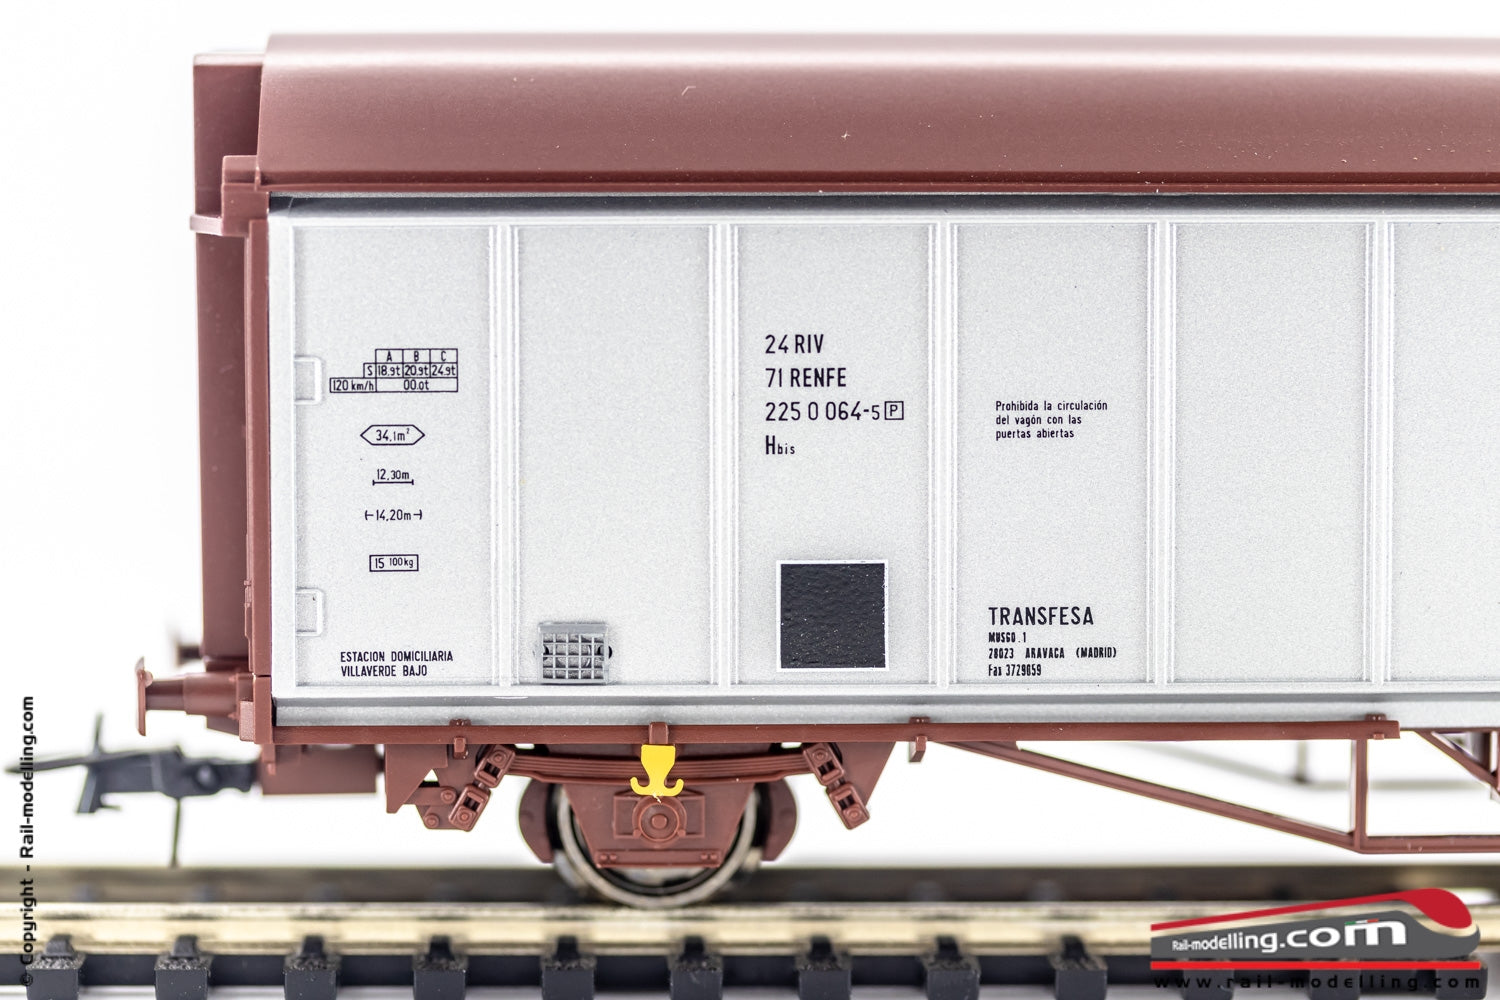 ROCO 76786 - H0 1:87 - Carro merci a pareti scorrevoli RENFE modello Hbis ditta TRANSFESA